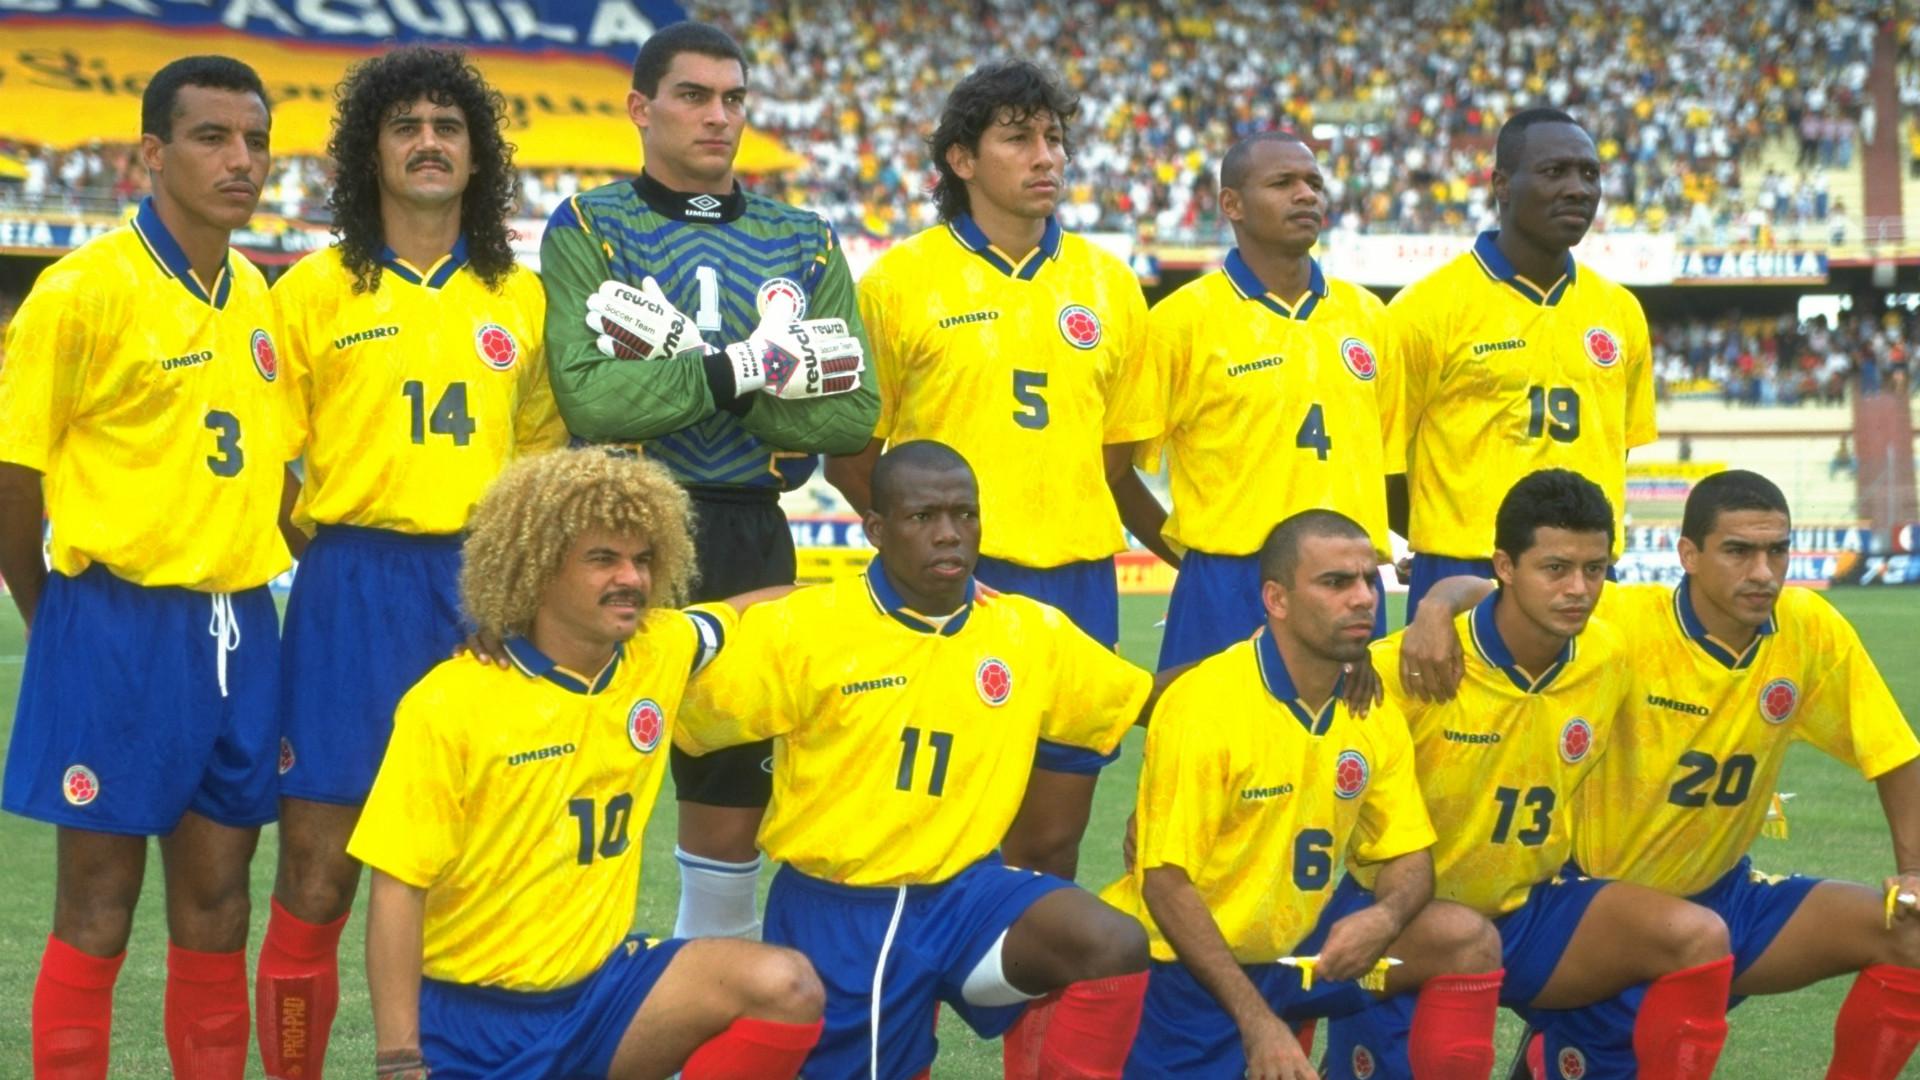 Guardiola Hizo Lo Mismo Que Colombia En El Mundial De Italia 90 Rincon